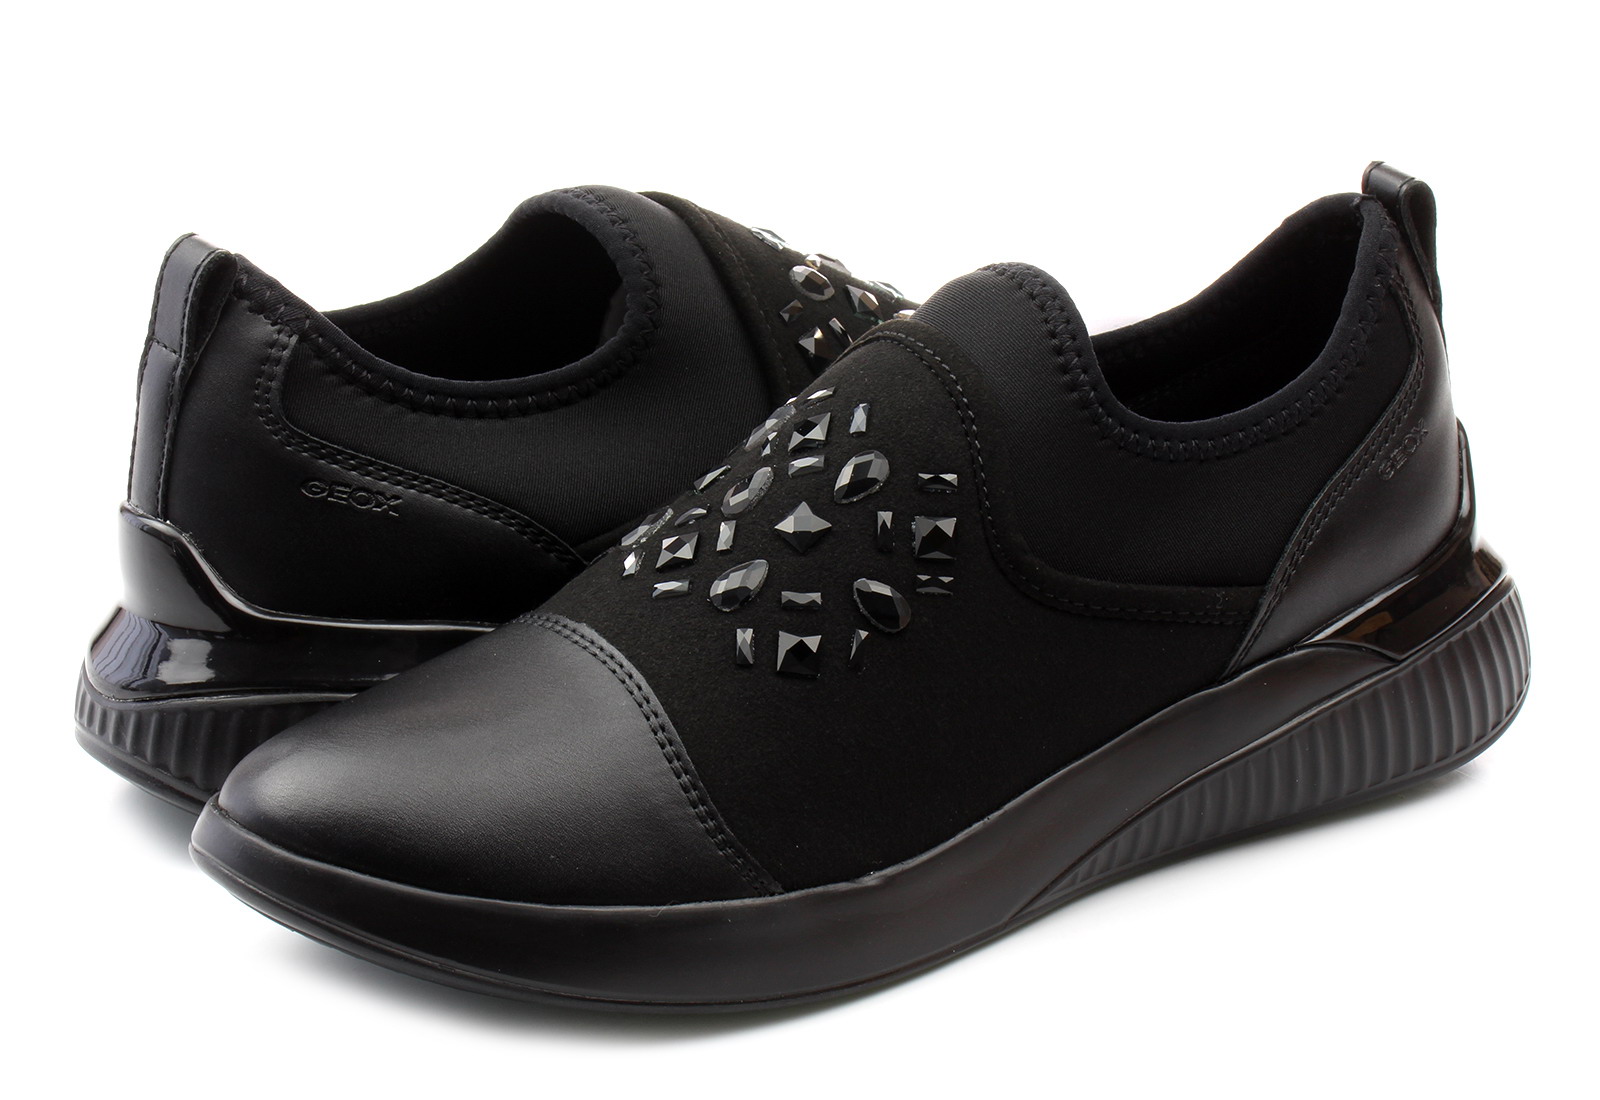 Geox Wsuwane - Theragon - 8SA-54AU-9999 - i buty damskie, męskie, dziecięce Office Shoes